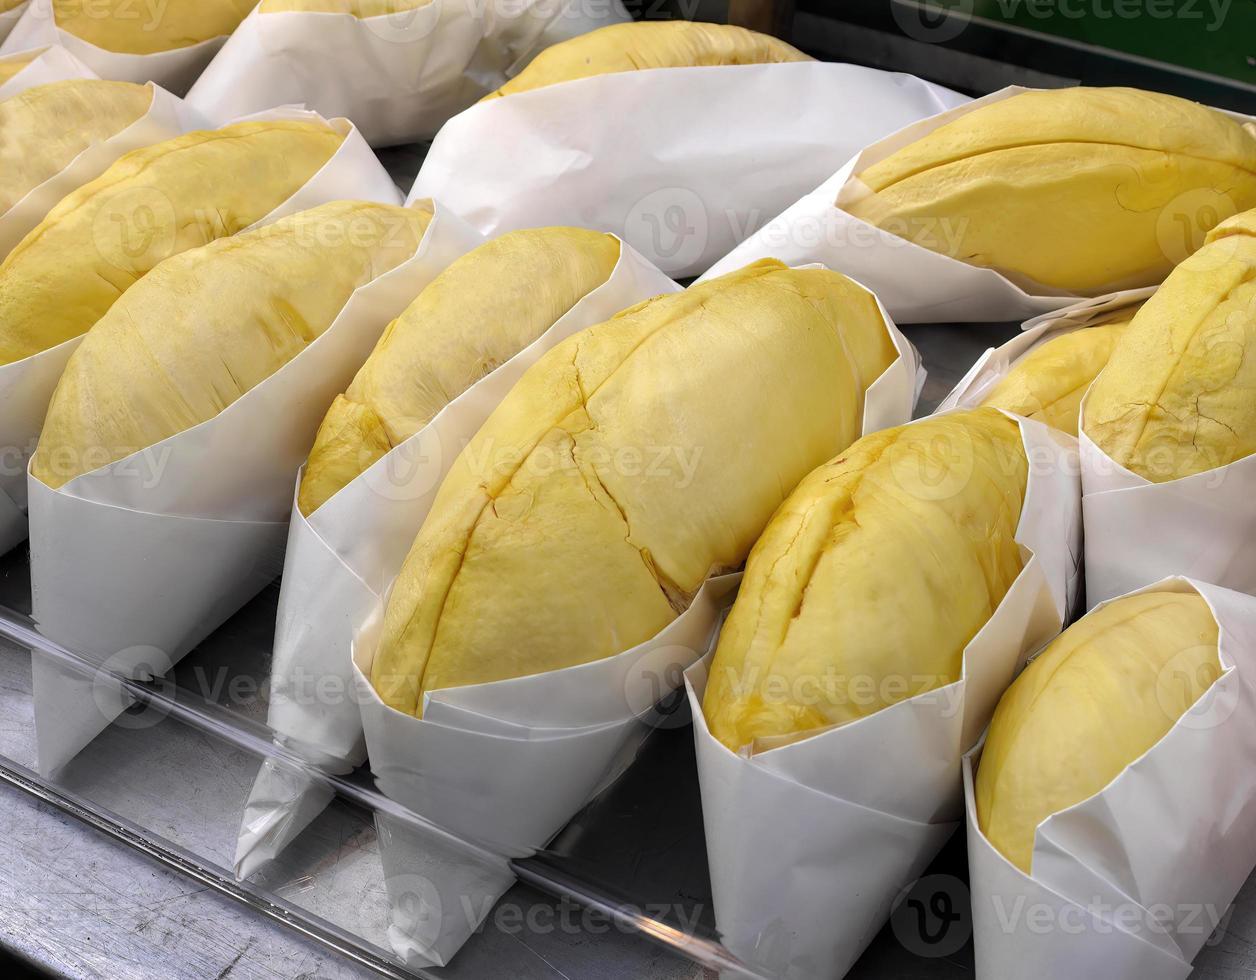 Nahaufnahme Rolle von goldgelber Durian-Fleischfarbe, eingewickelt in weißes Papier, verzehrfertig, zu verkaufen, süßer Geschmack, natürliche Form und Gestalt, tropische Saisonfrüchte, König der Früchte, Thailand foto